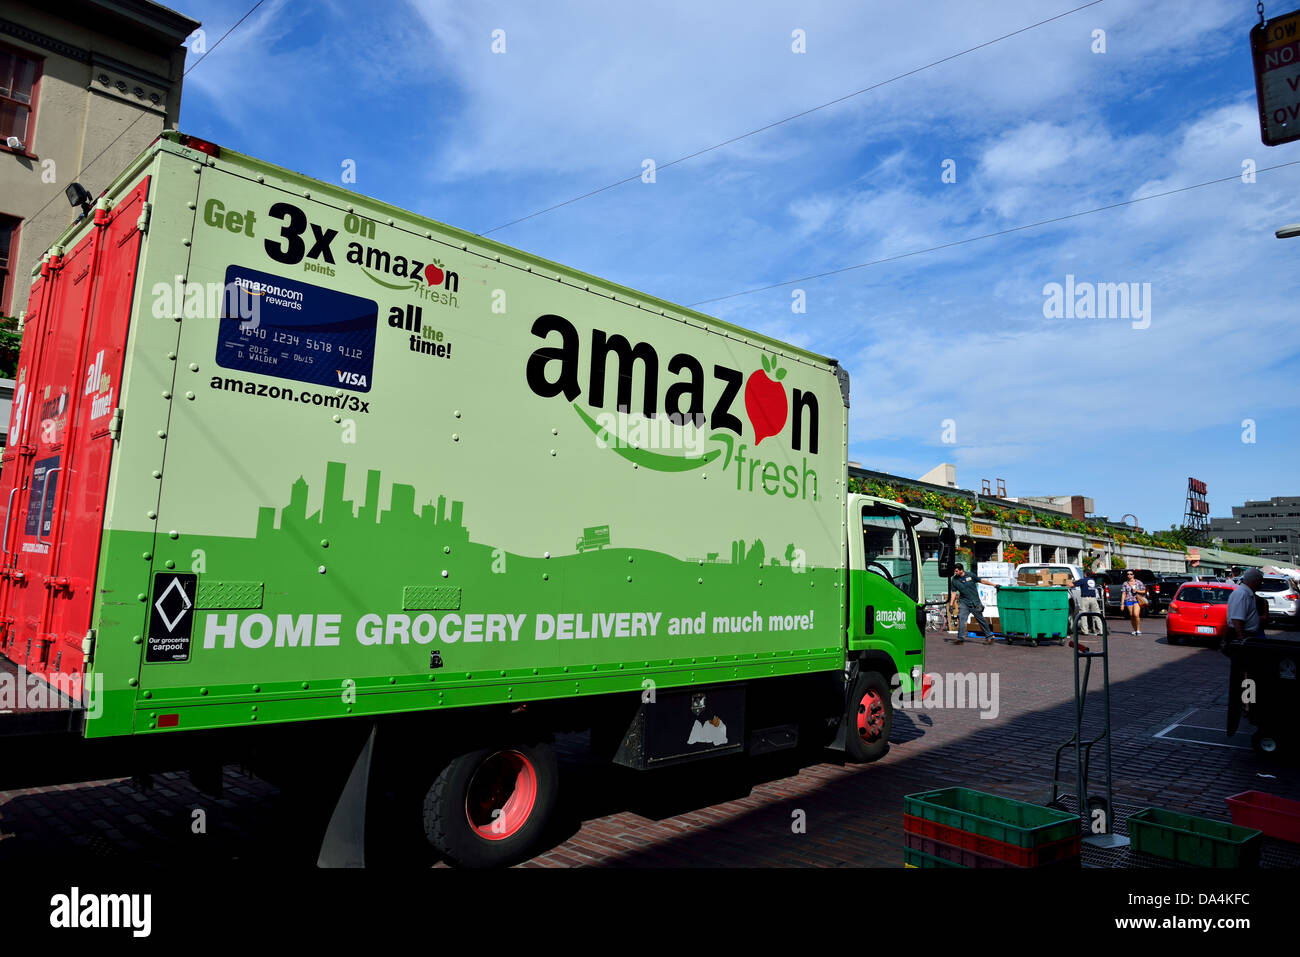 Amazon truck delivers fresh produce. Seattle, Washington, USA. Stock Photo